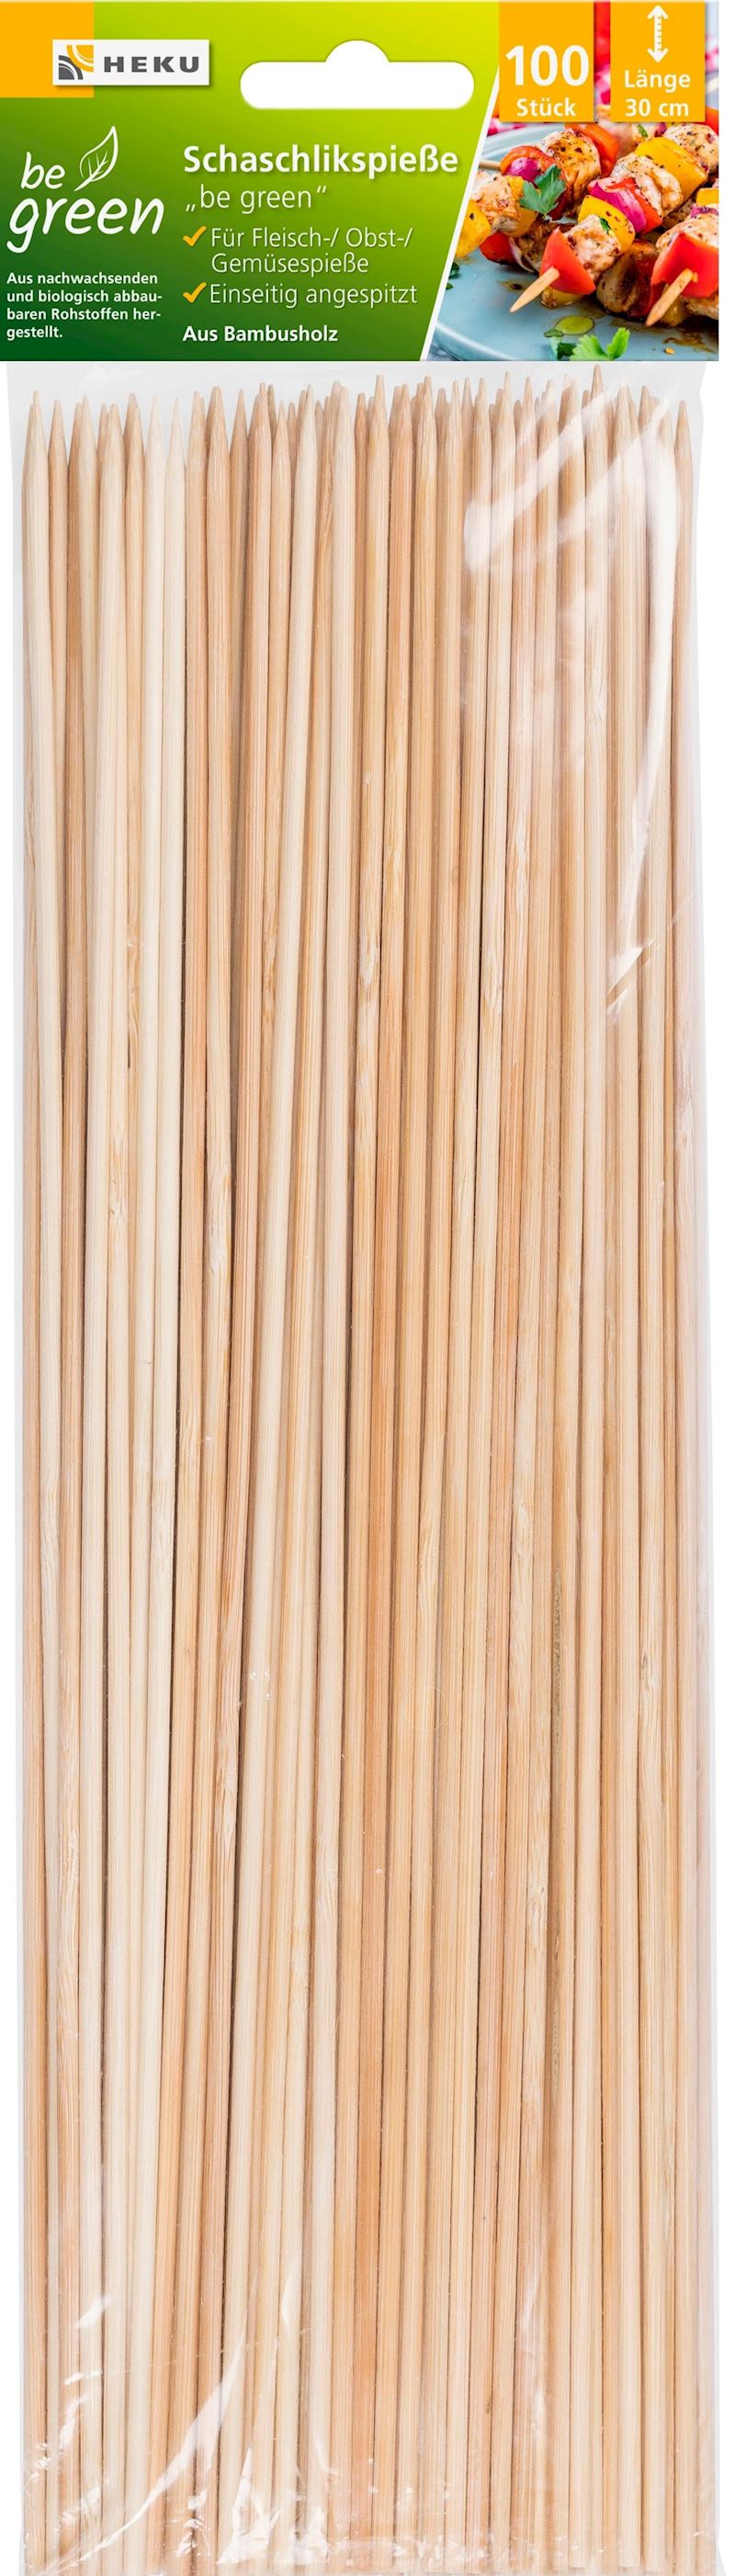 Schaschlikspiesse 100 Stk. 30 cm aus Bambus 3 mm DM